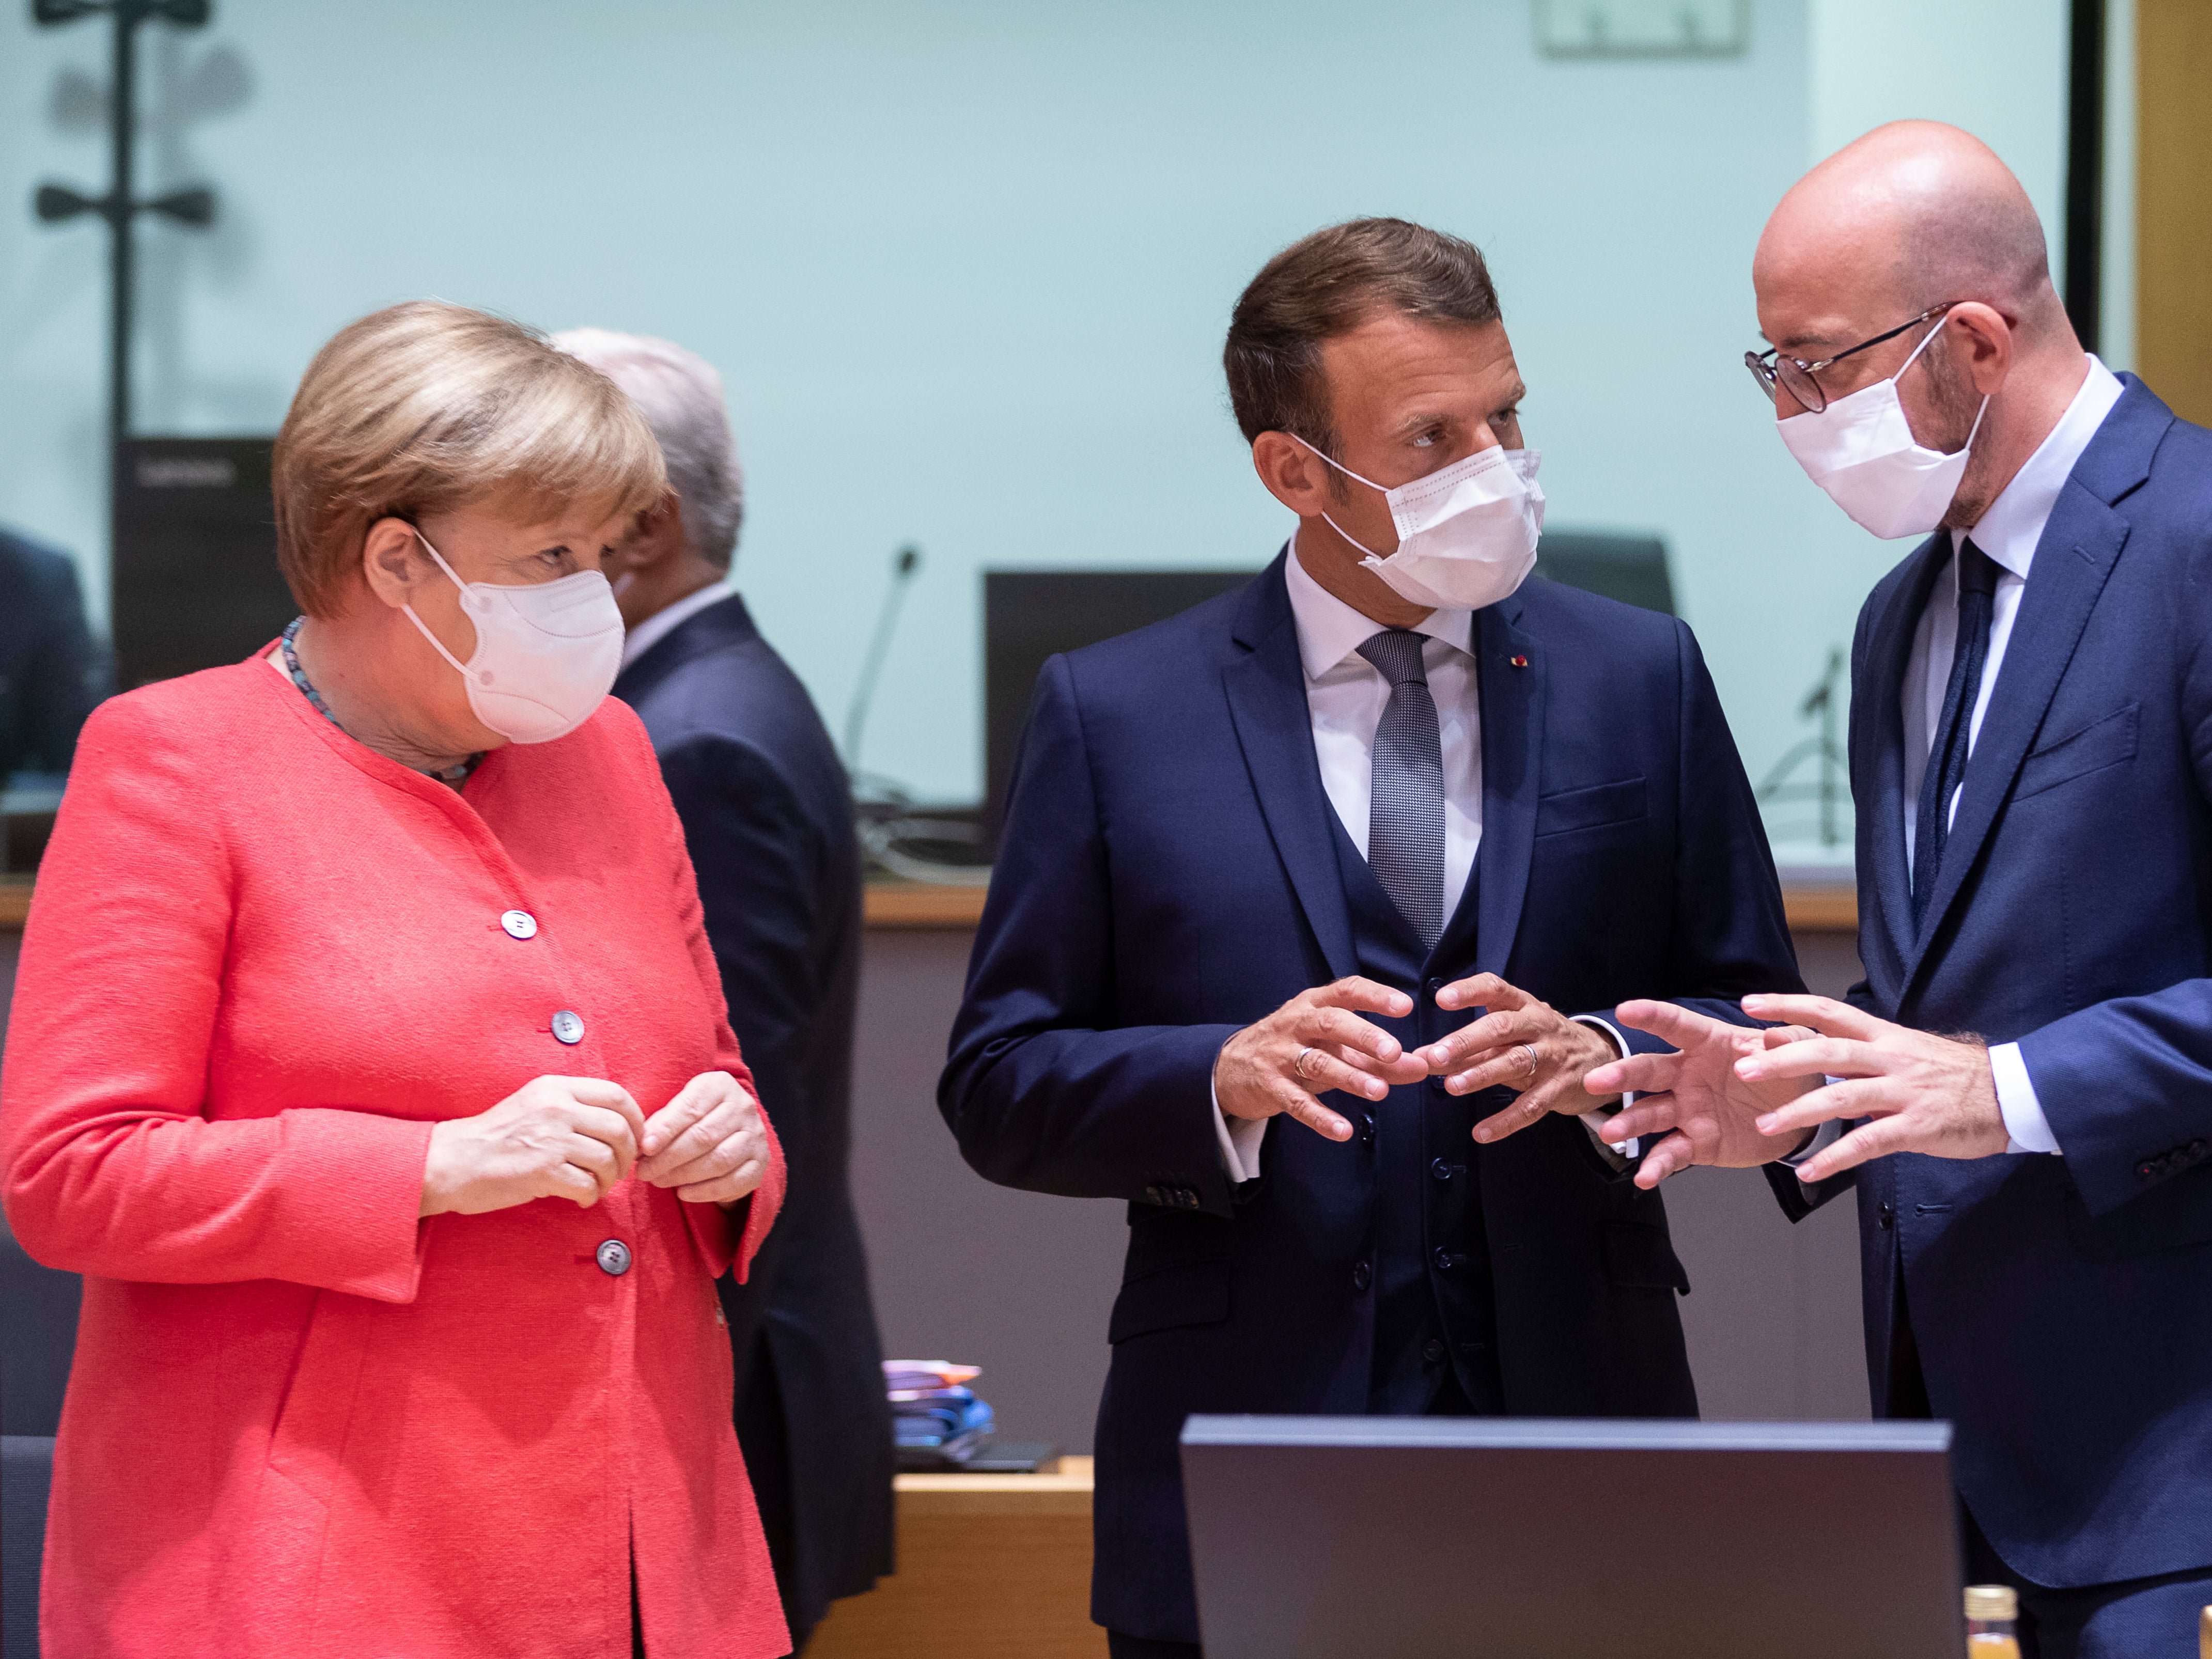 Angela Merkel talks with Emmanuel Macron